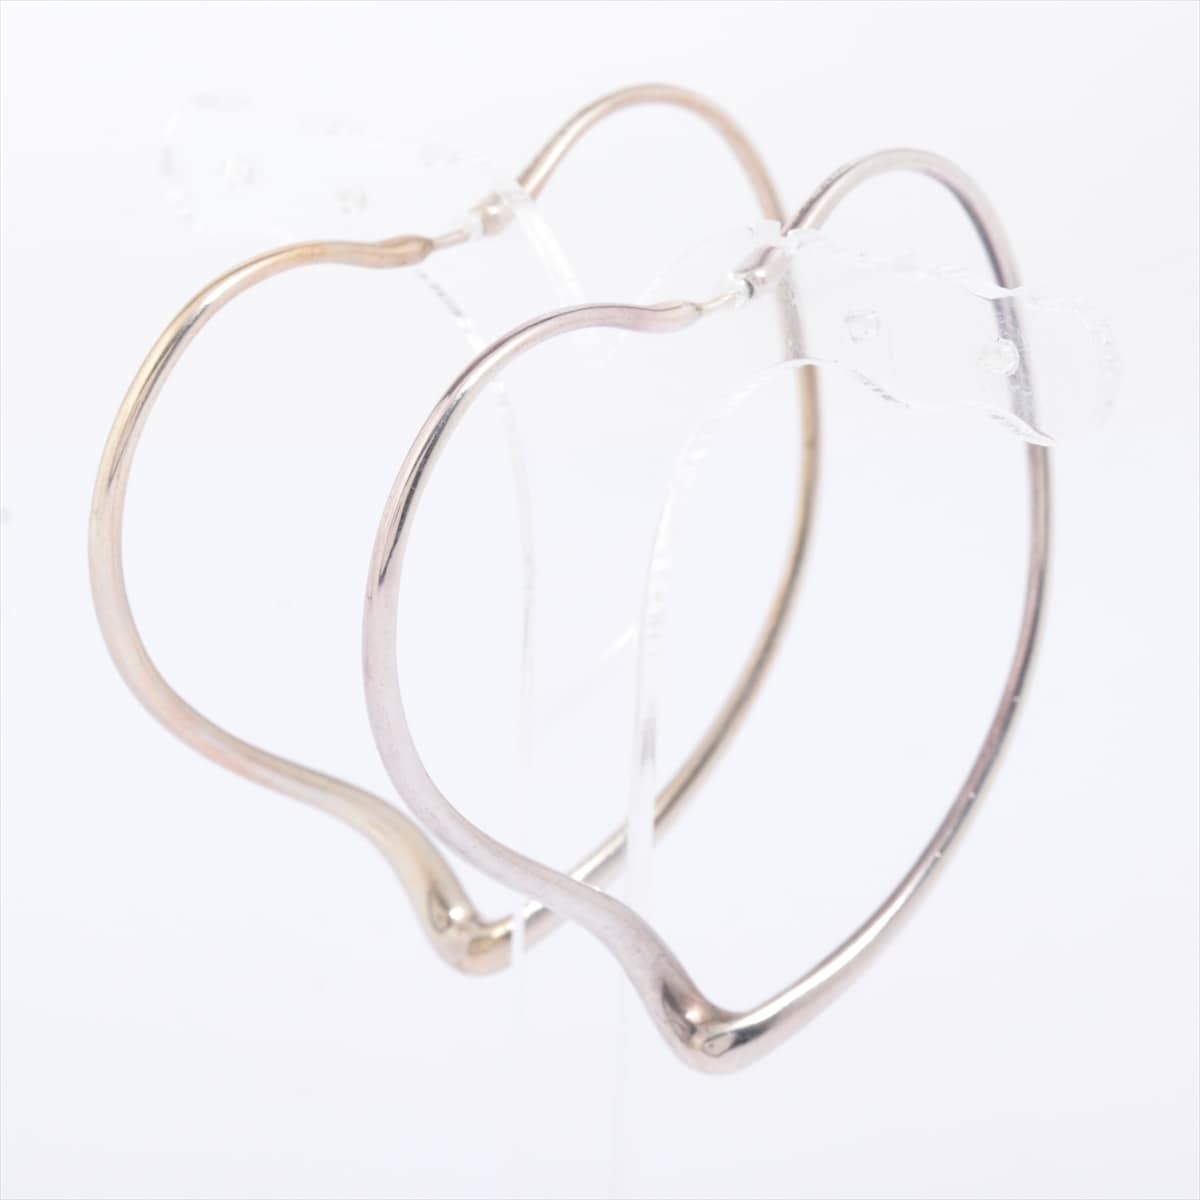 Tiffany Open Heart Hoop Piercing jewelry (for both ears) 925 11.7g Silver